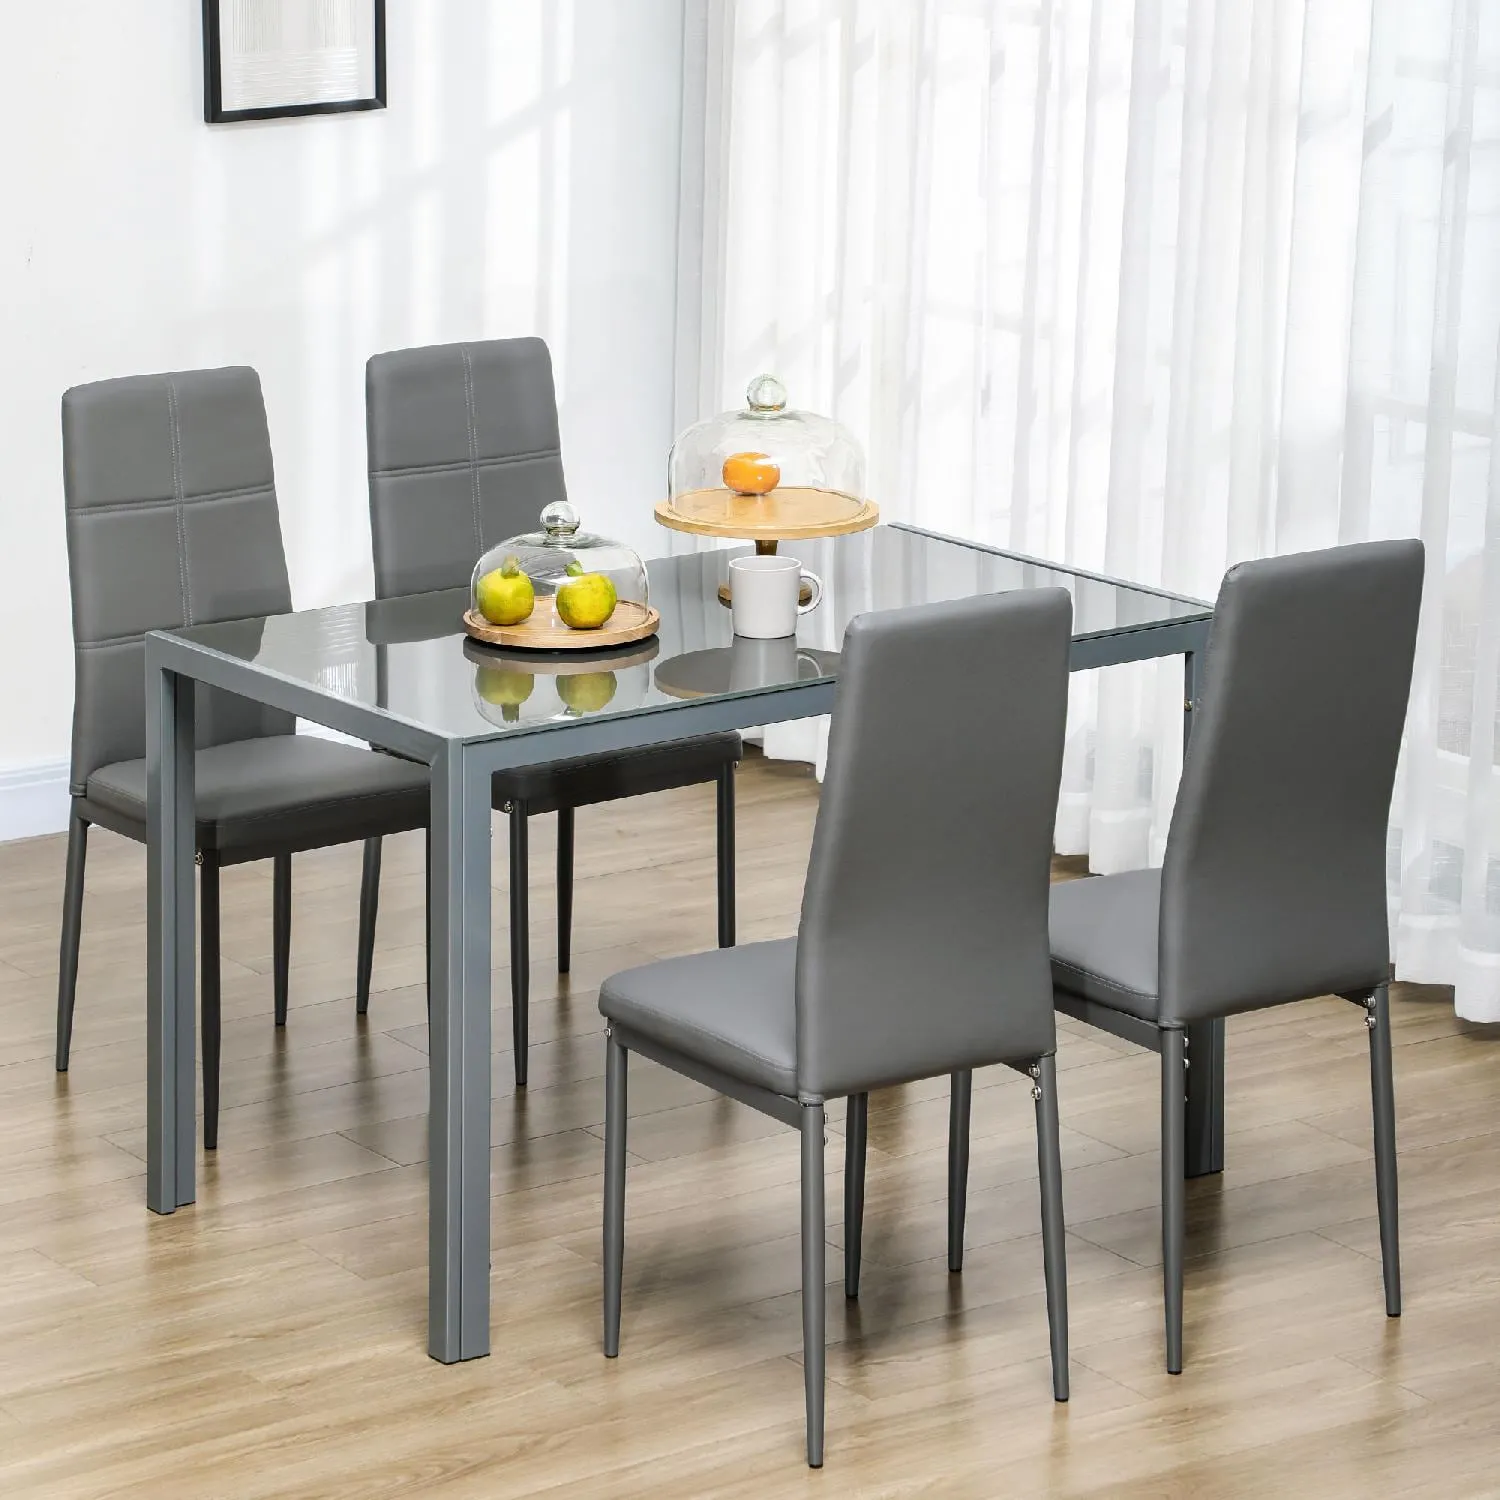 Elegante e confortevole sedie economiche moderne per pranzo/cucina